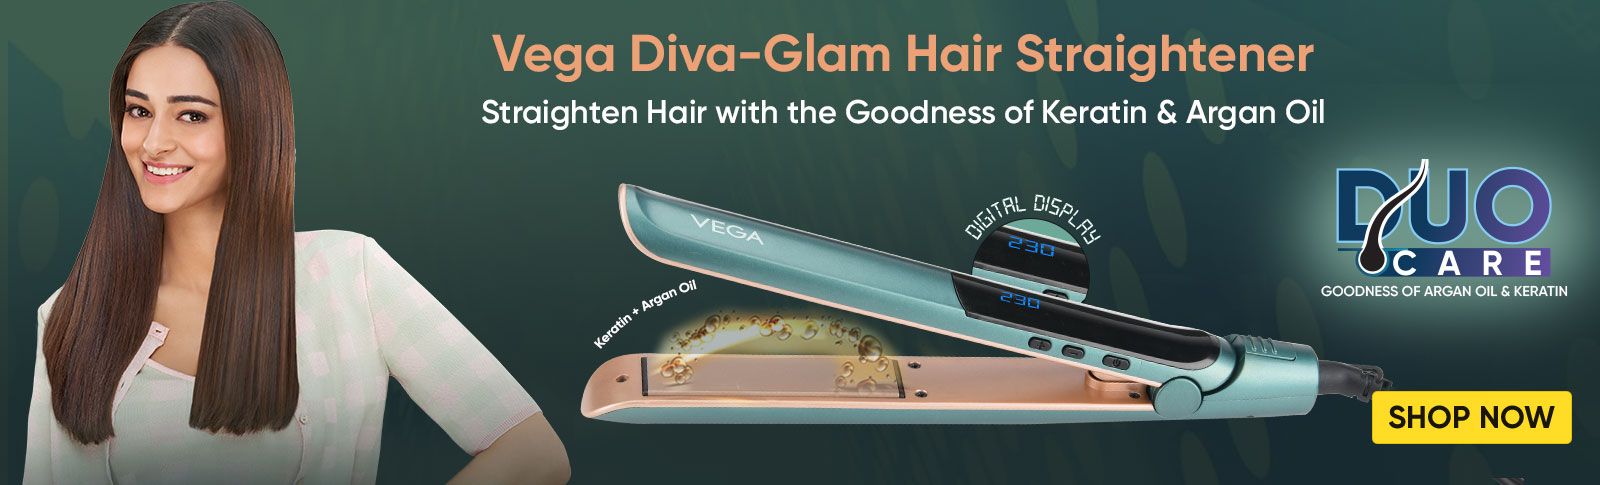 Vega Diva-Glam Hair Straightener